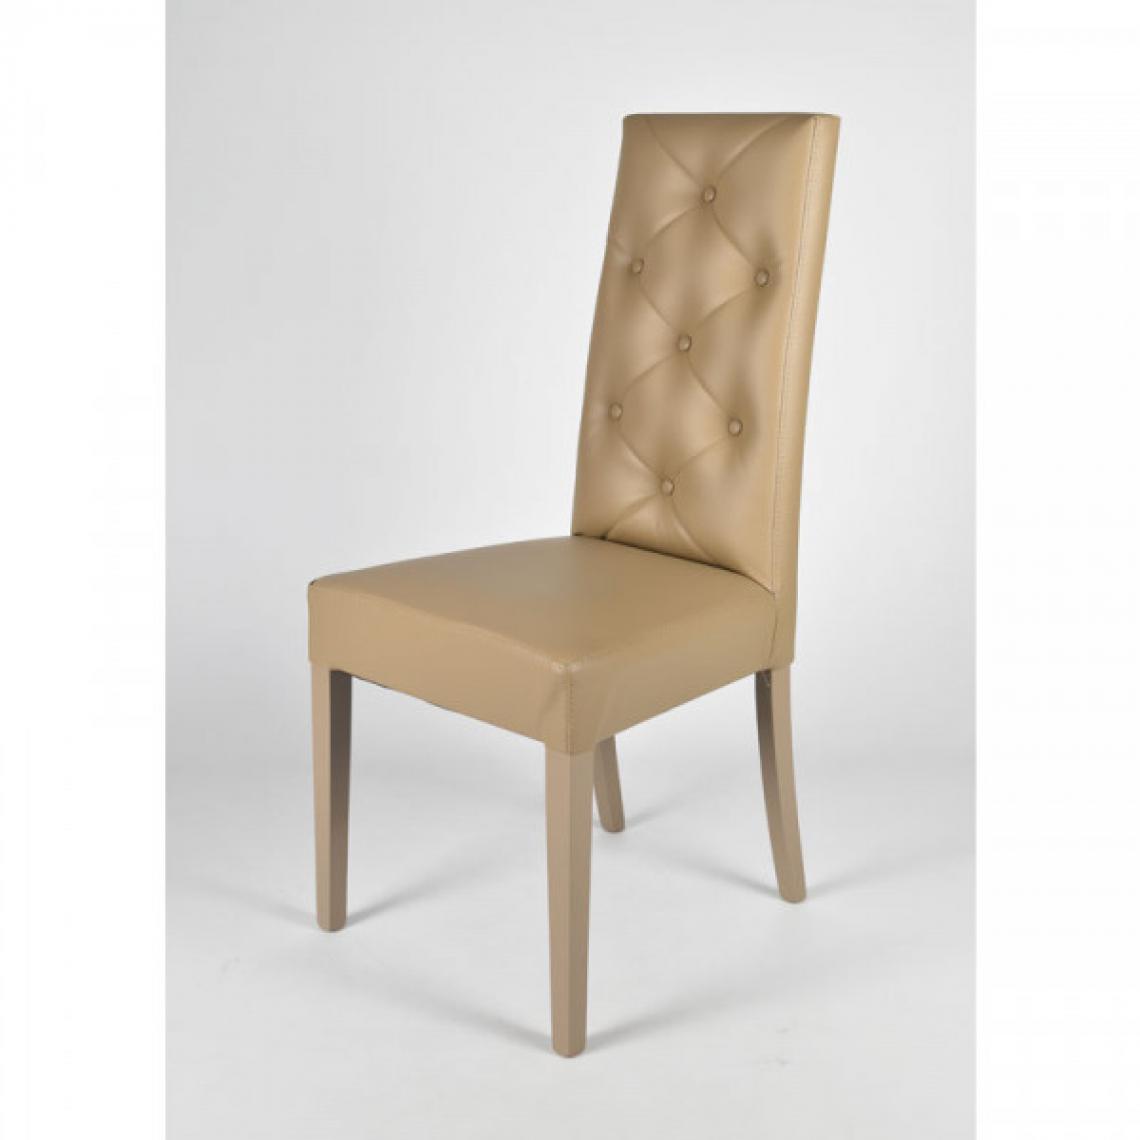 Dansmamaison - Duo de chaises Taupe - SIENA - L 54 x l 46 x H 99 cm - Chaises